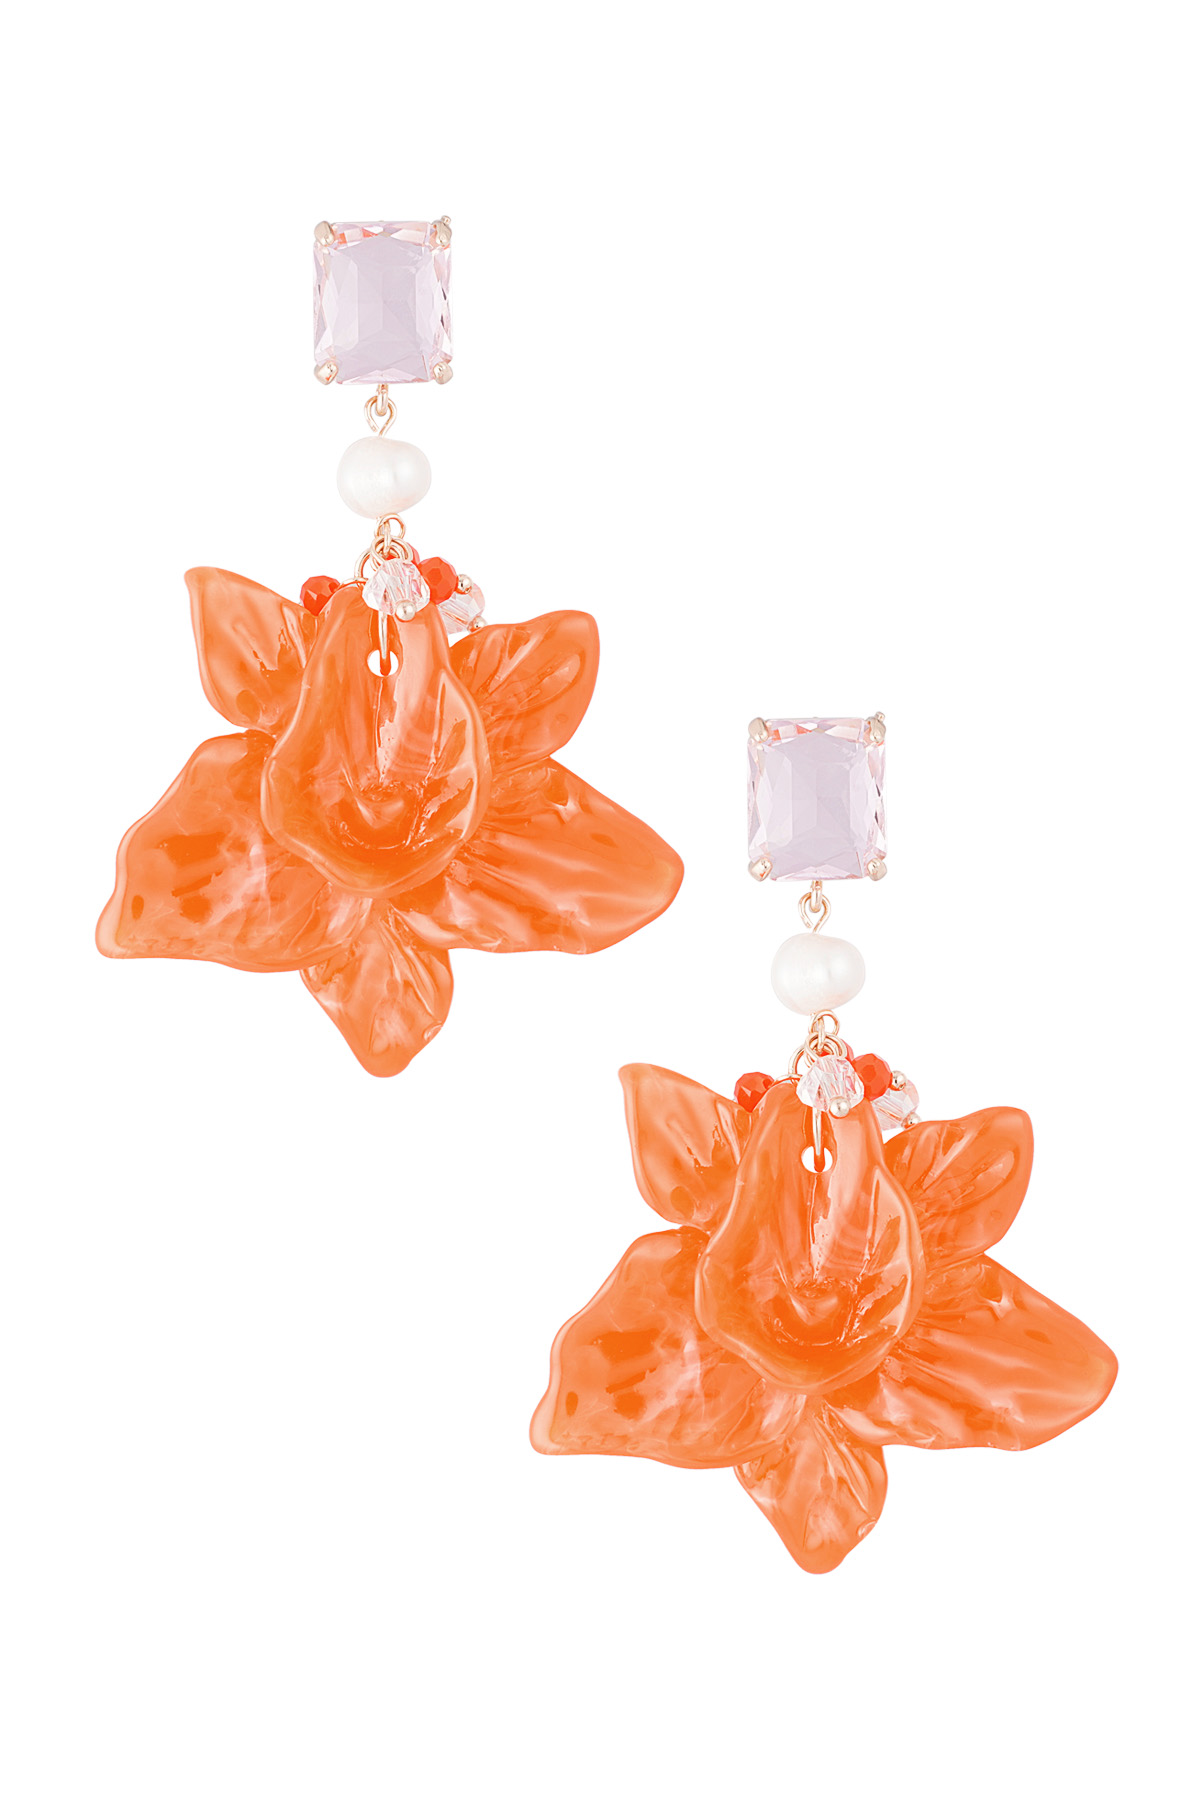 Bloemen parel feest oorbellen - oranje/roze 